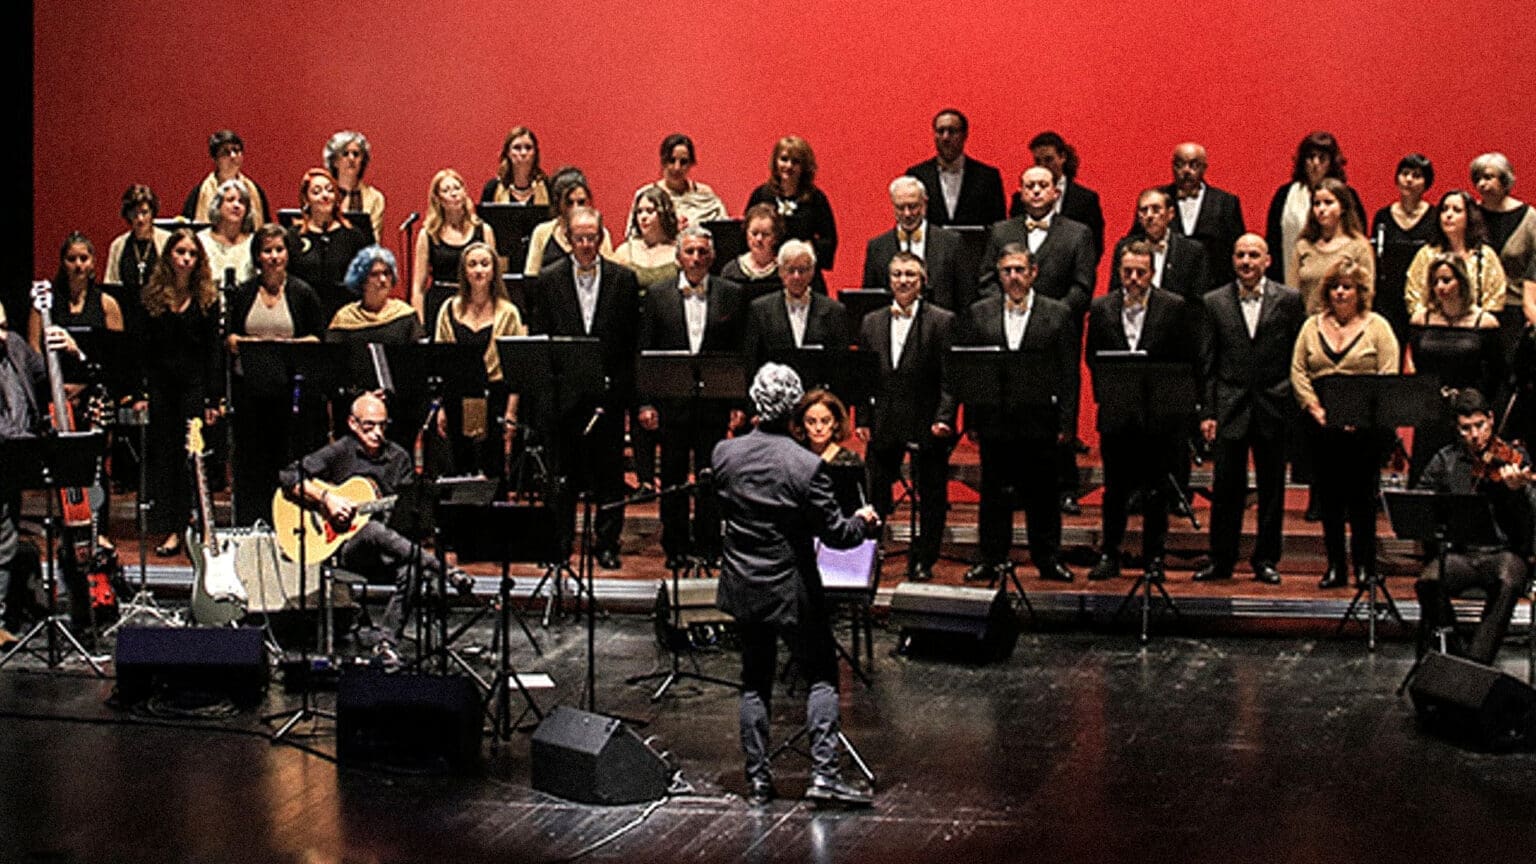 61 Anos Depois, o Coral Luísa Todi Celebra a sua Primeira Atuação Pública com um Concerto Memorável em Setúbal